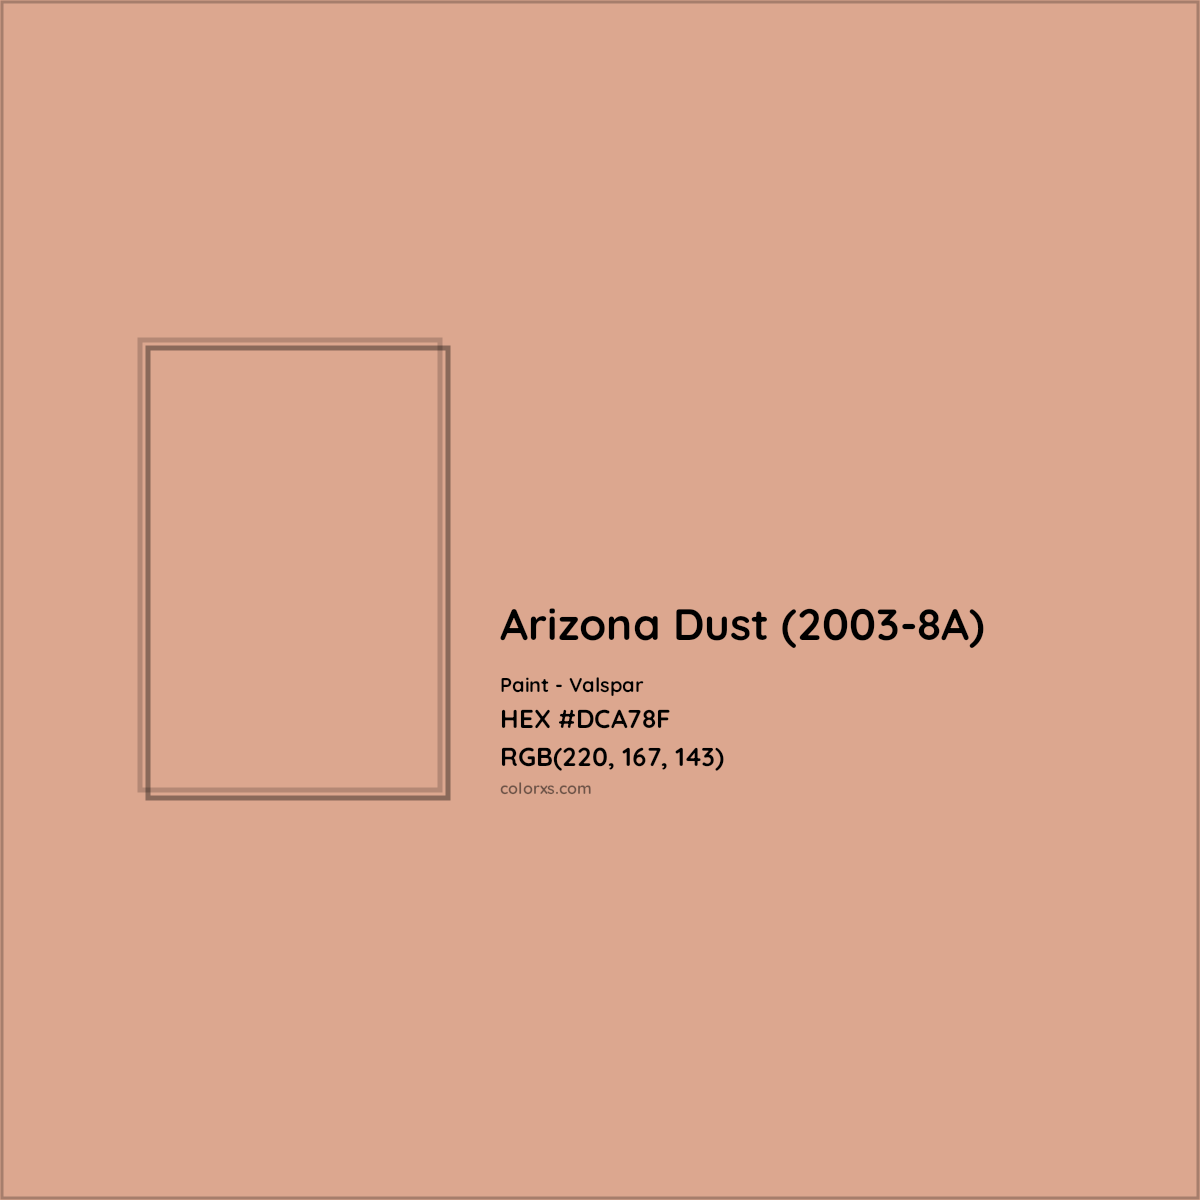 HEX #DCA78F Arizona Dust (2003-8A) Paint Valspar - Color Code